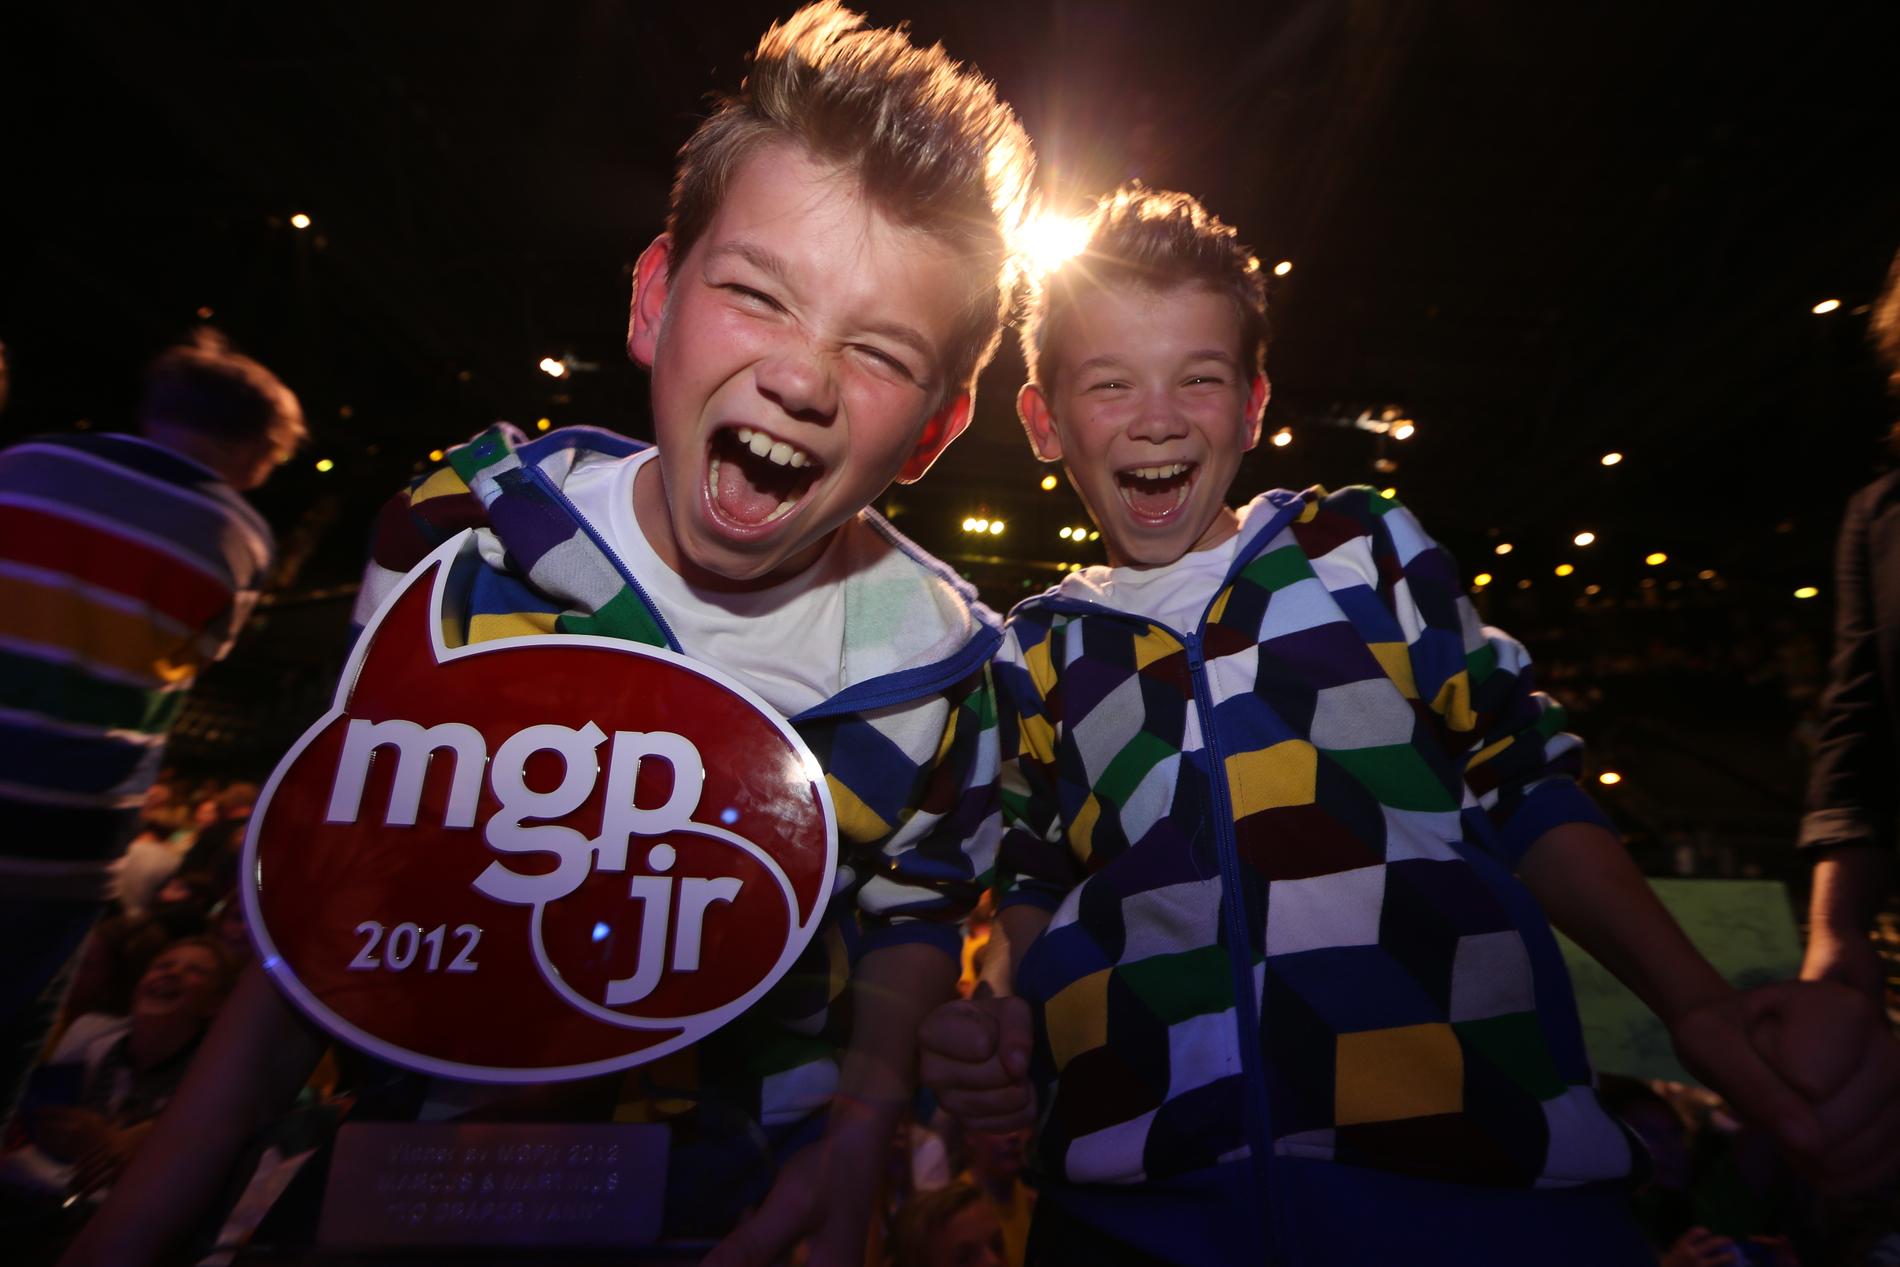 Marcus Gunnarsen och Martinus Gunnarsen, då 10 år, vann Melodi Grand Prix jr 1012.